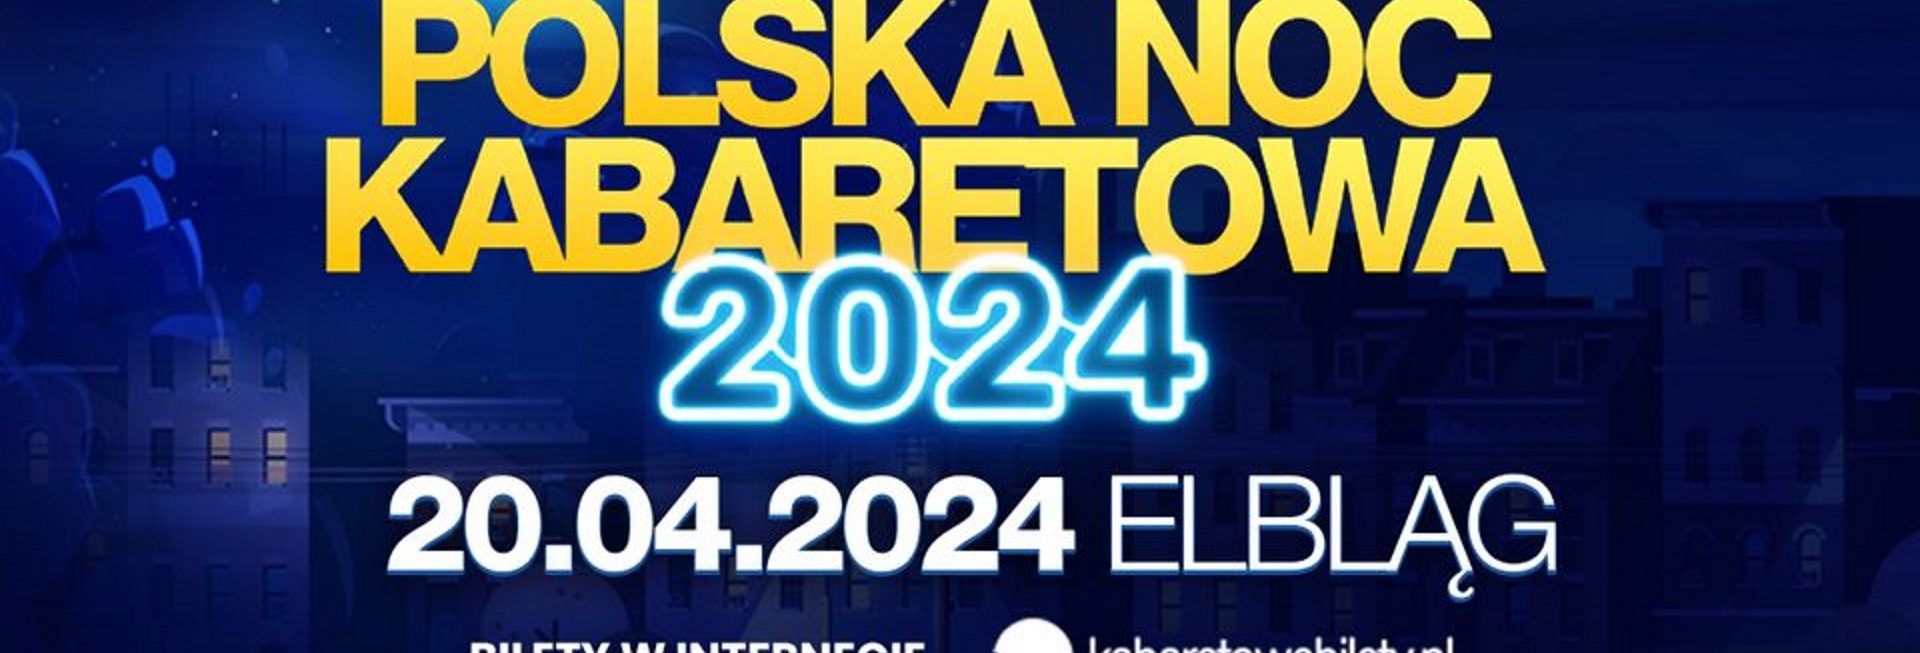 Plakat zapraszający w sobotę 20 kwietnia 2024 r. do Elbląga na kolejną edycję Polskiej Nocy Kabaretowej Elbląg 2024.